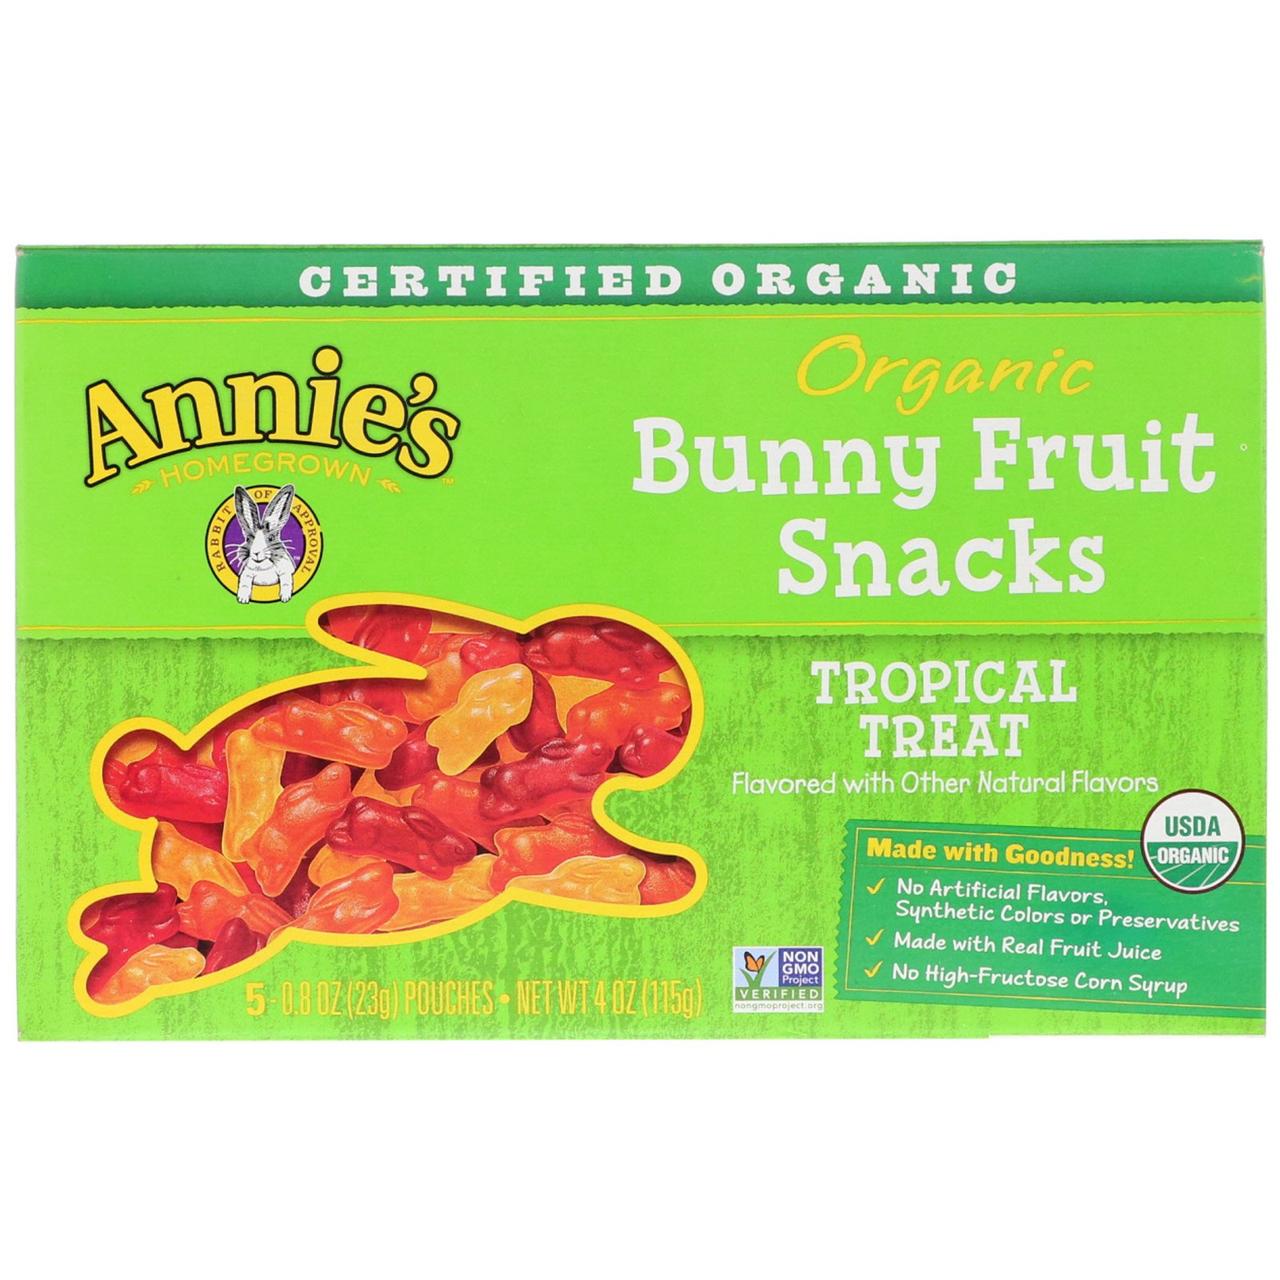 Снеки в виде кроликов, вкус тропик, Bunny Fruit, Annie's Homegrown, 5 пакетов по 23 г